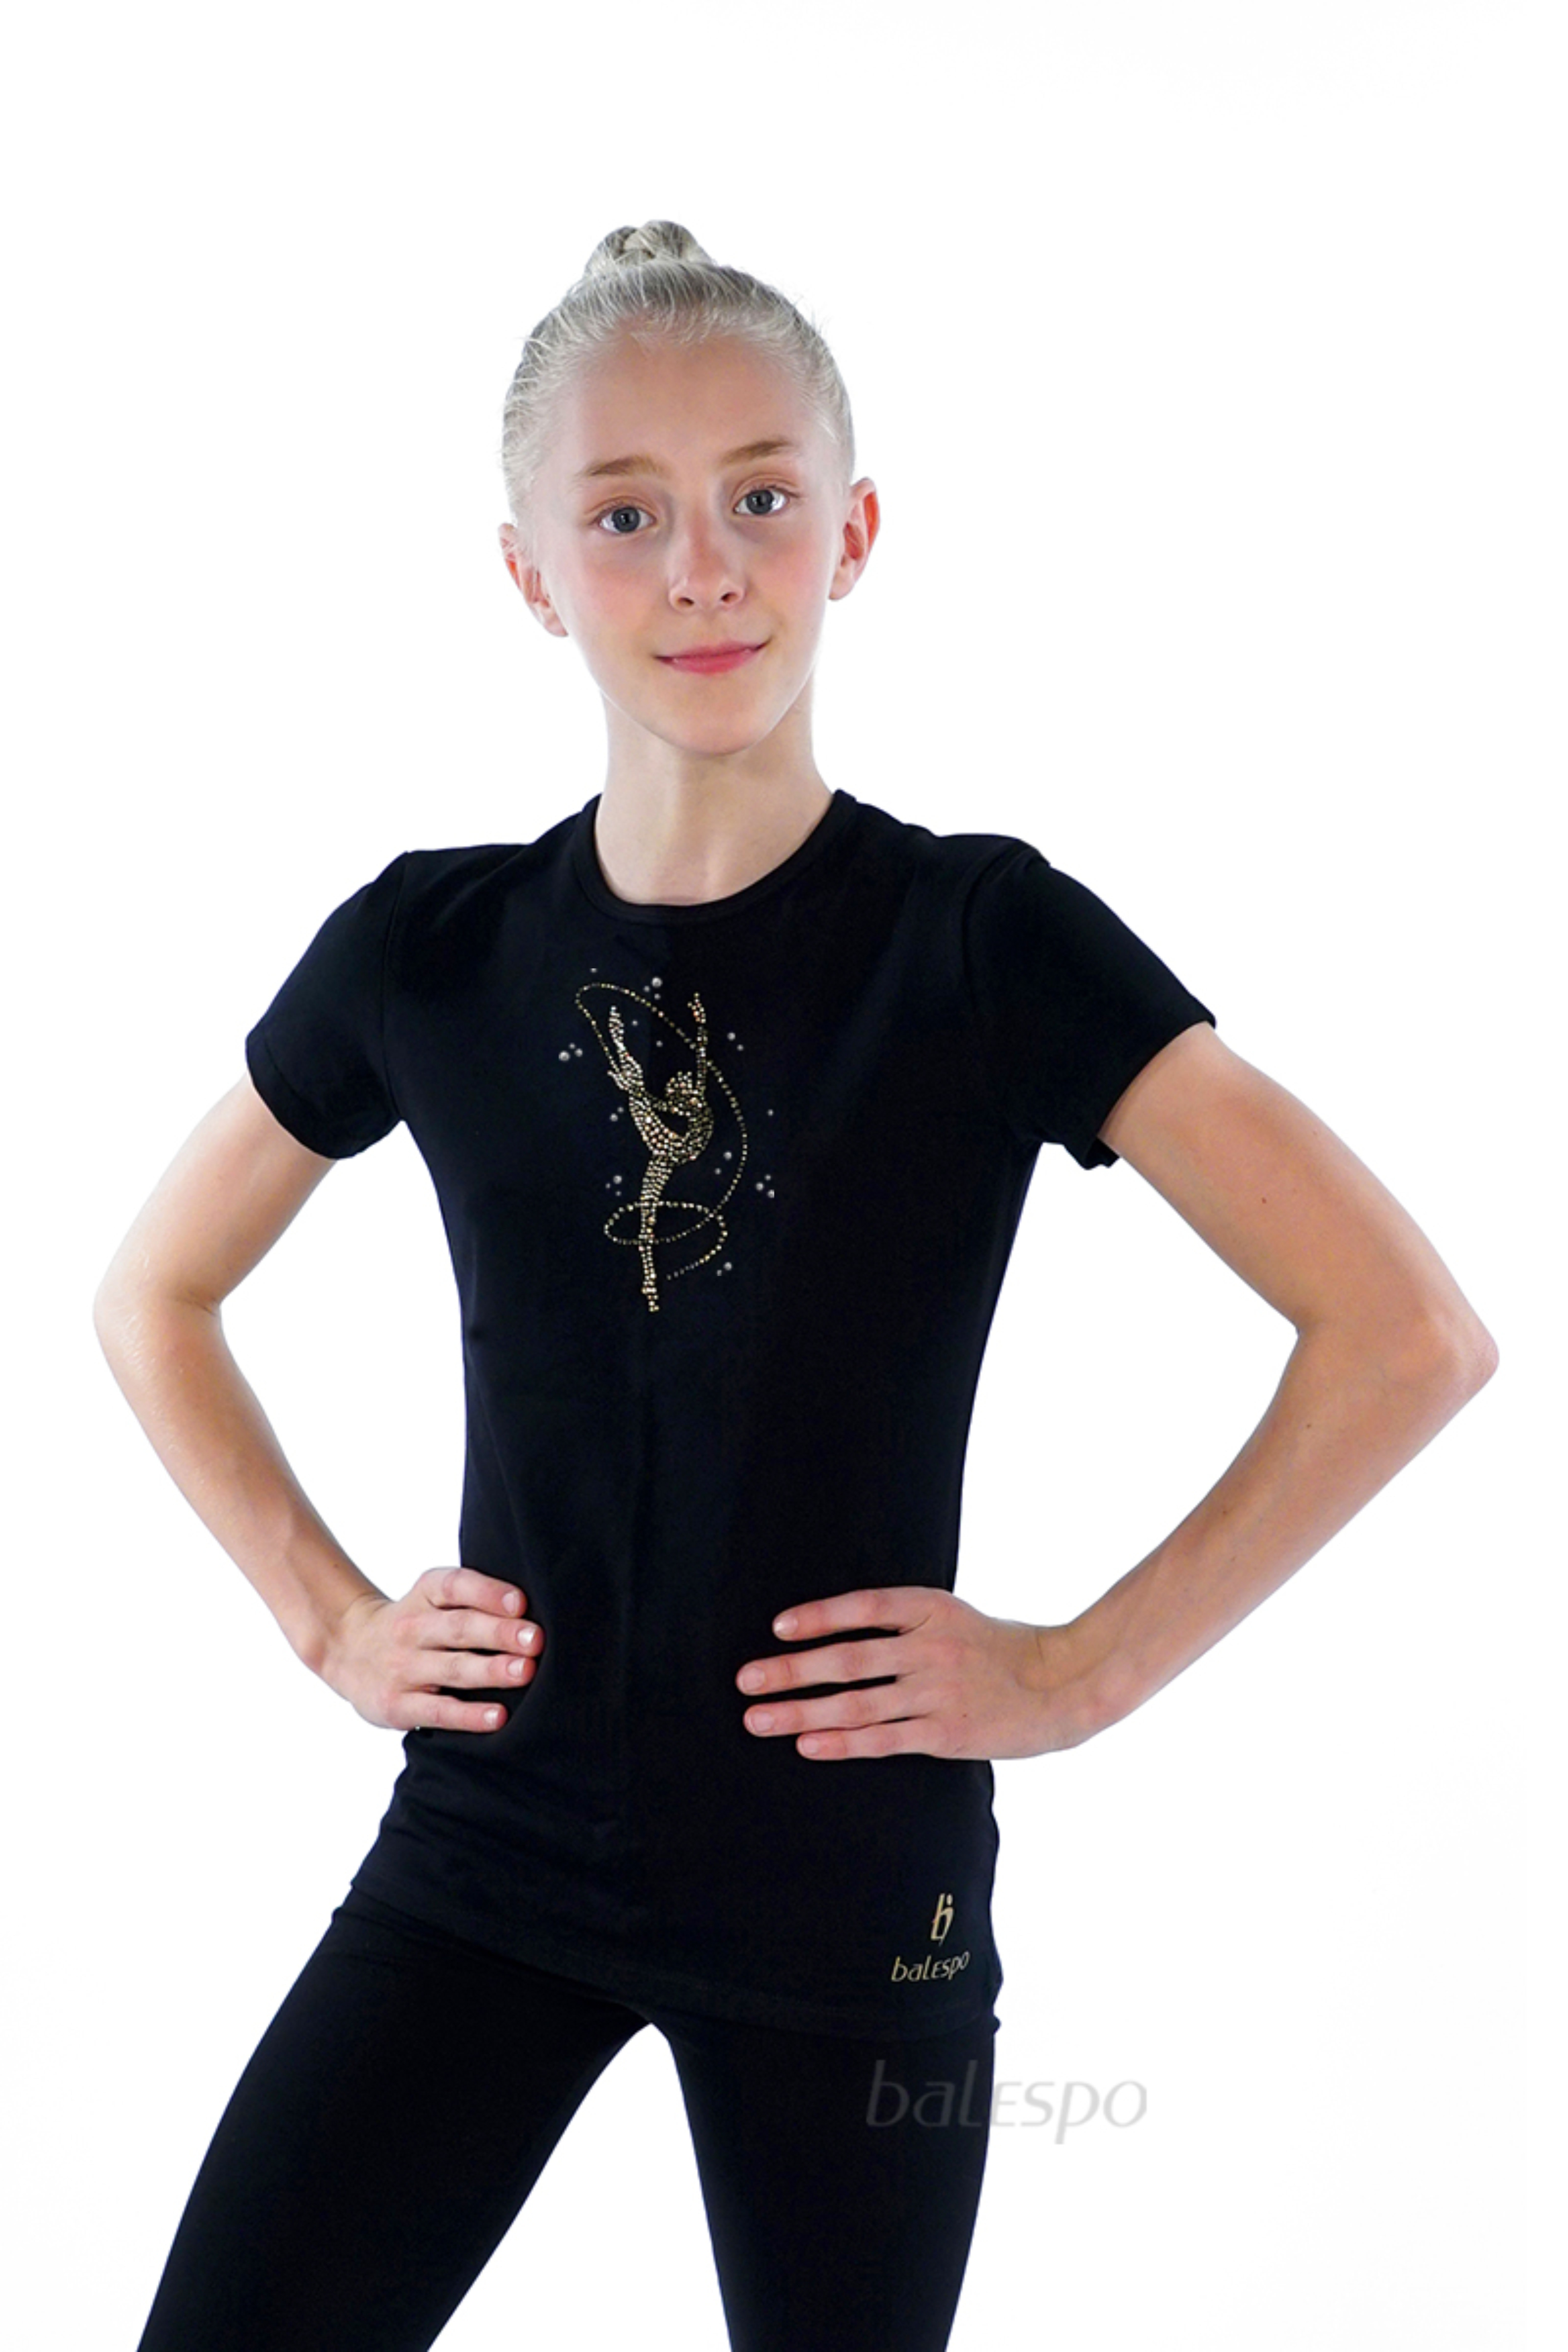 Gymnastické tričko s krátkymi rukávmi BALESPO BC210.1-100 čierne so zlatými kamienkami "Gymnastka so stuhou" veľ.44 (164)